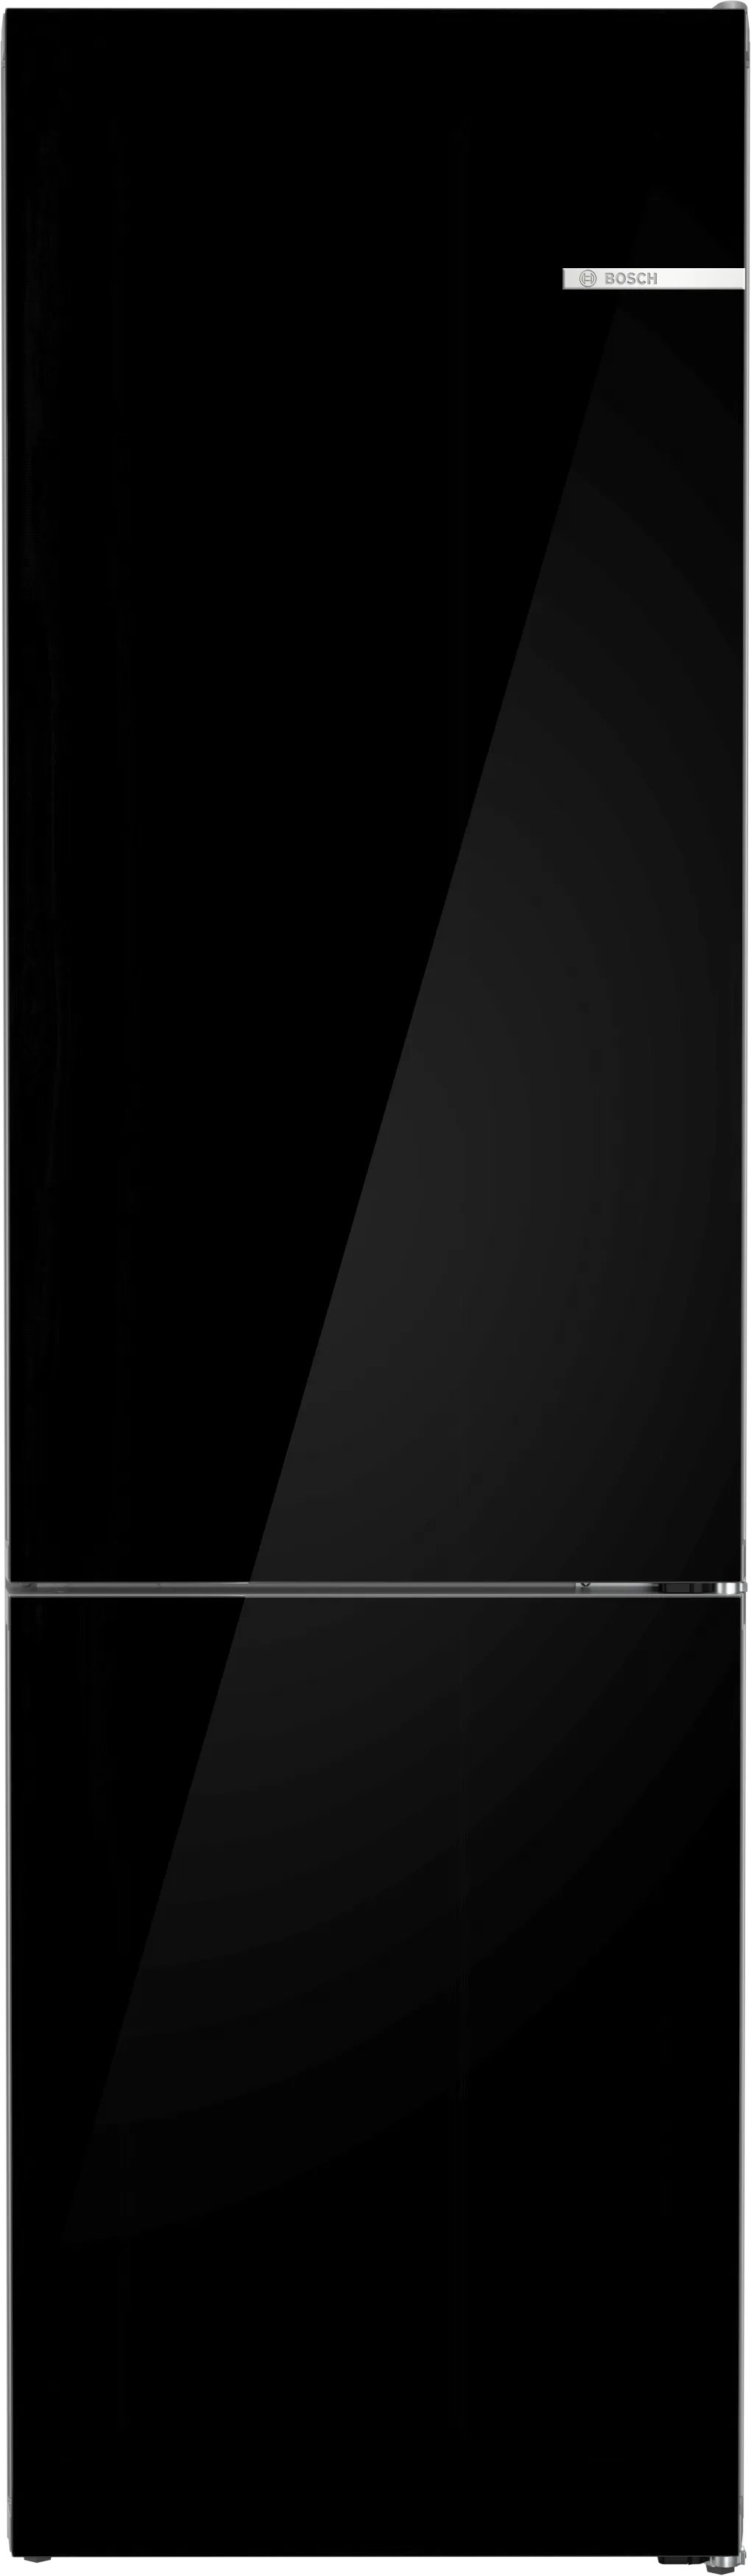 Σειρά 6 Ελεύθερος ψυγειοκαταψύκτης, με γυάλινη πόρτα 203 x 60 cm Μαύρο 